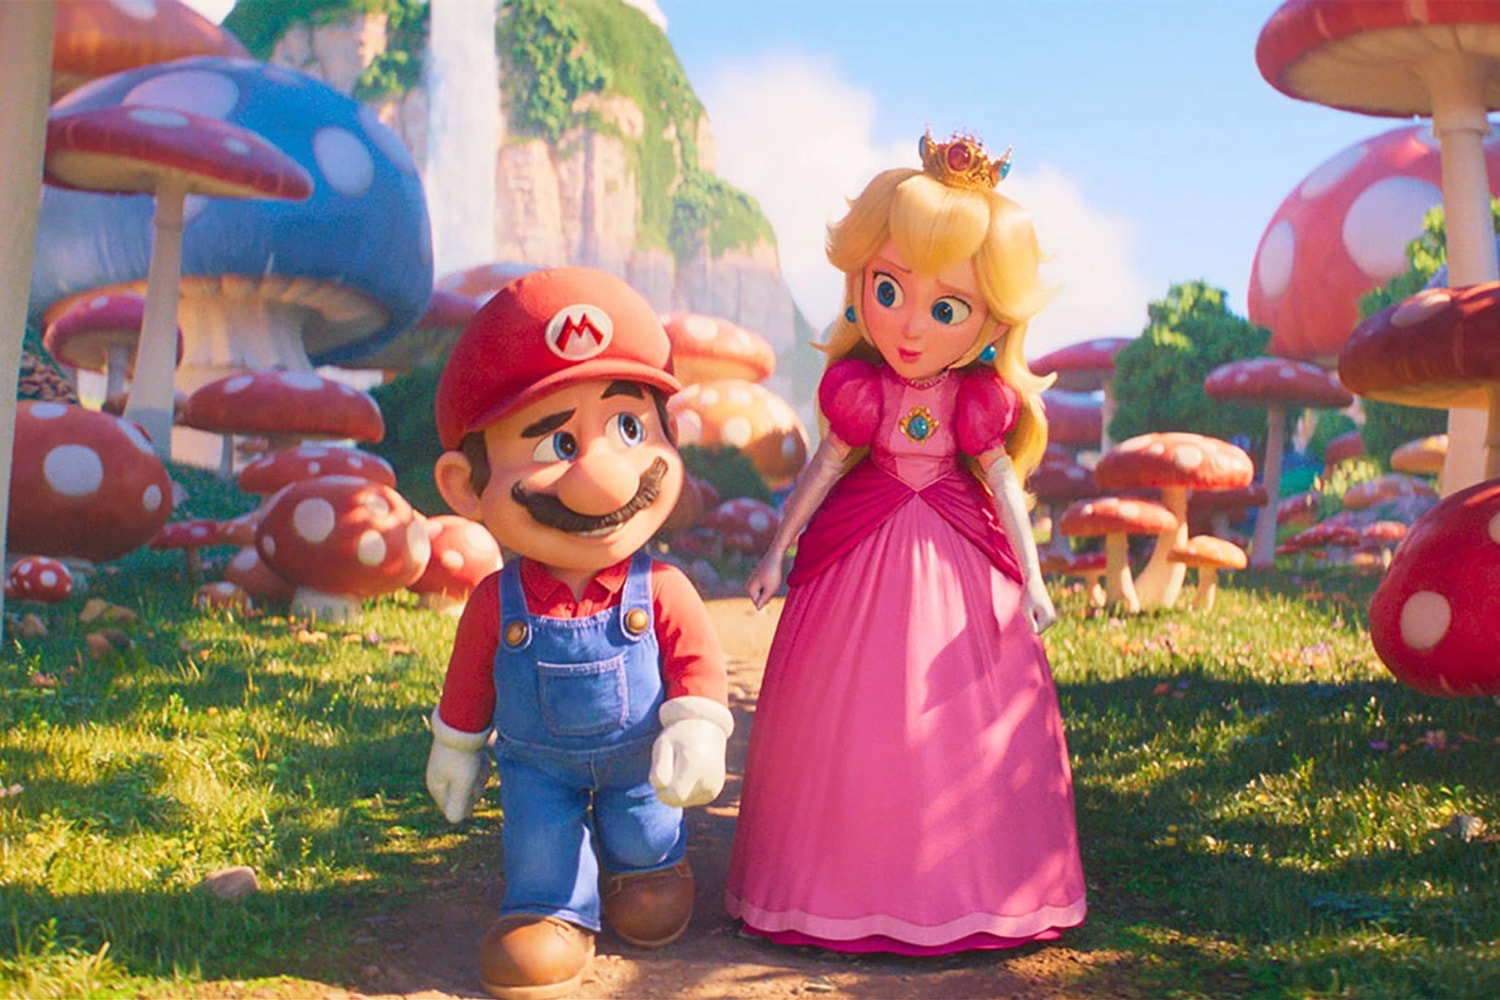 超級瑪利歐兄弟電影版《The Super Mario Bros. Movie》票房正式突破 $6 億美金